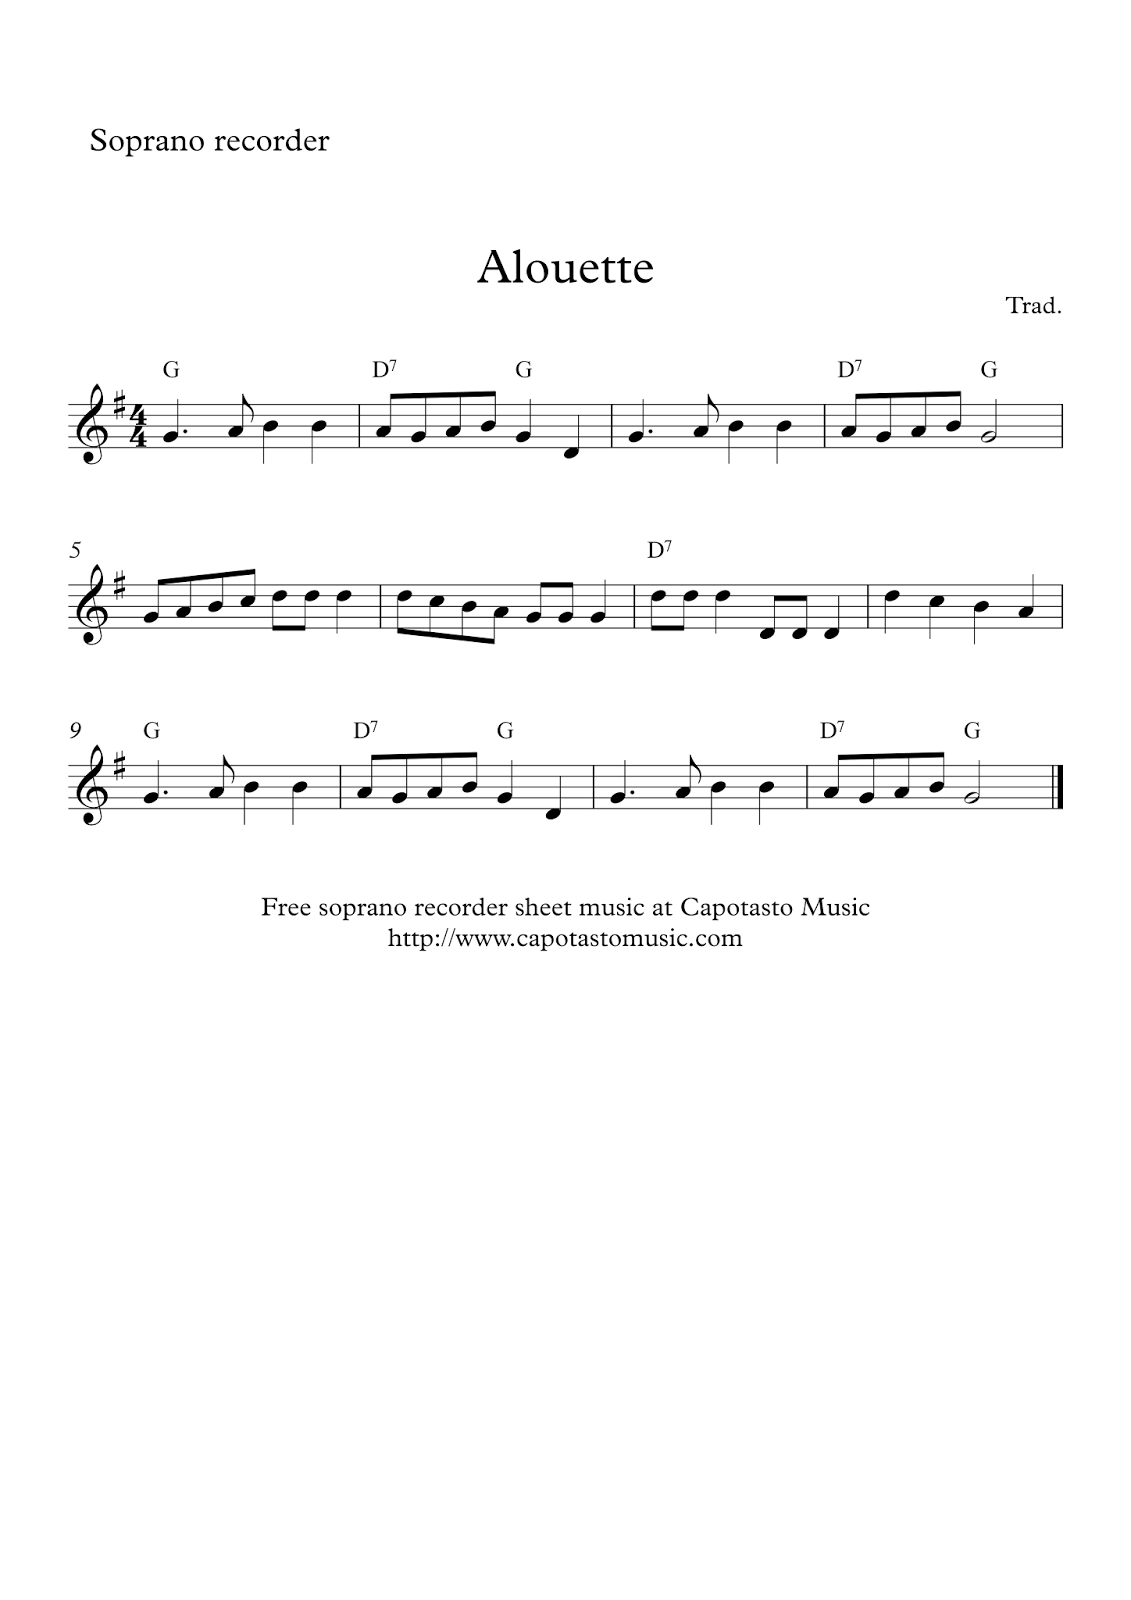 Free Printable Sheet Music Free Soprano Recorder Sheet Music Alouette